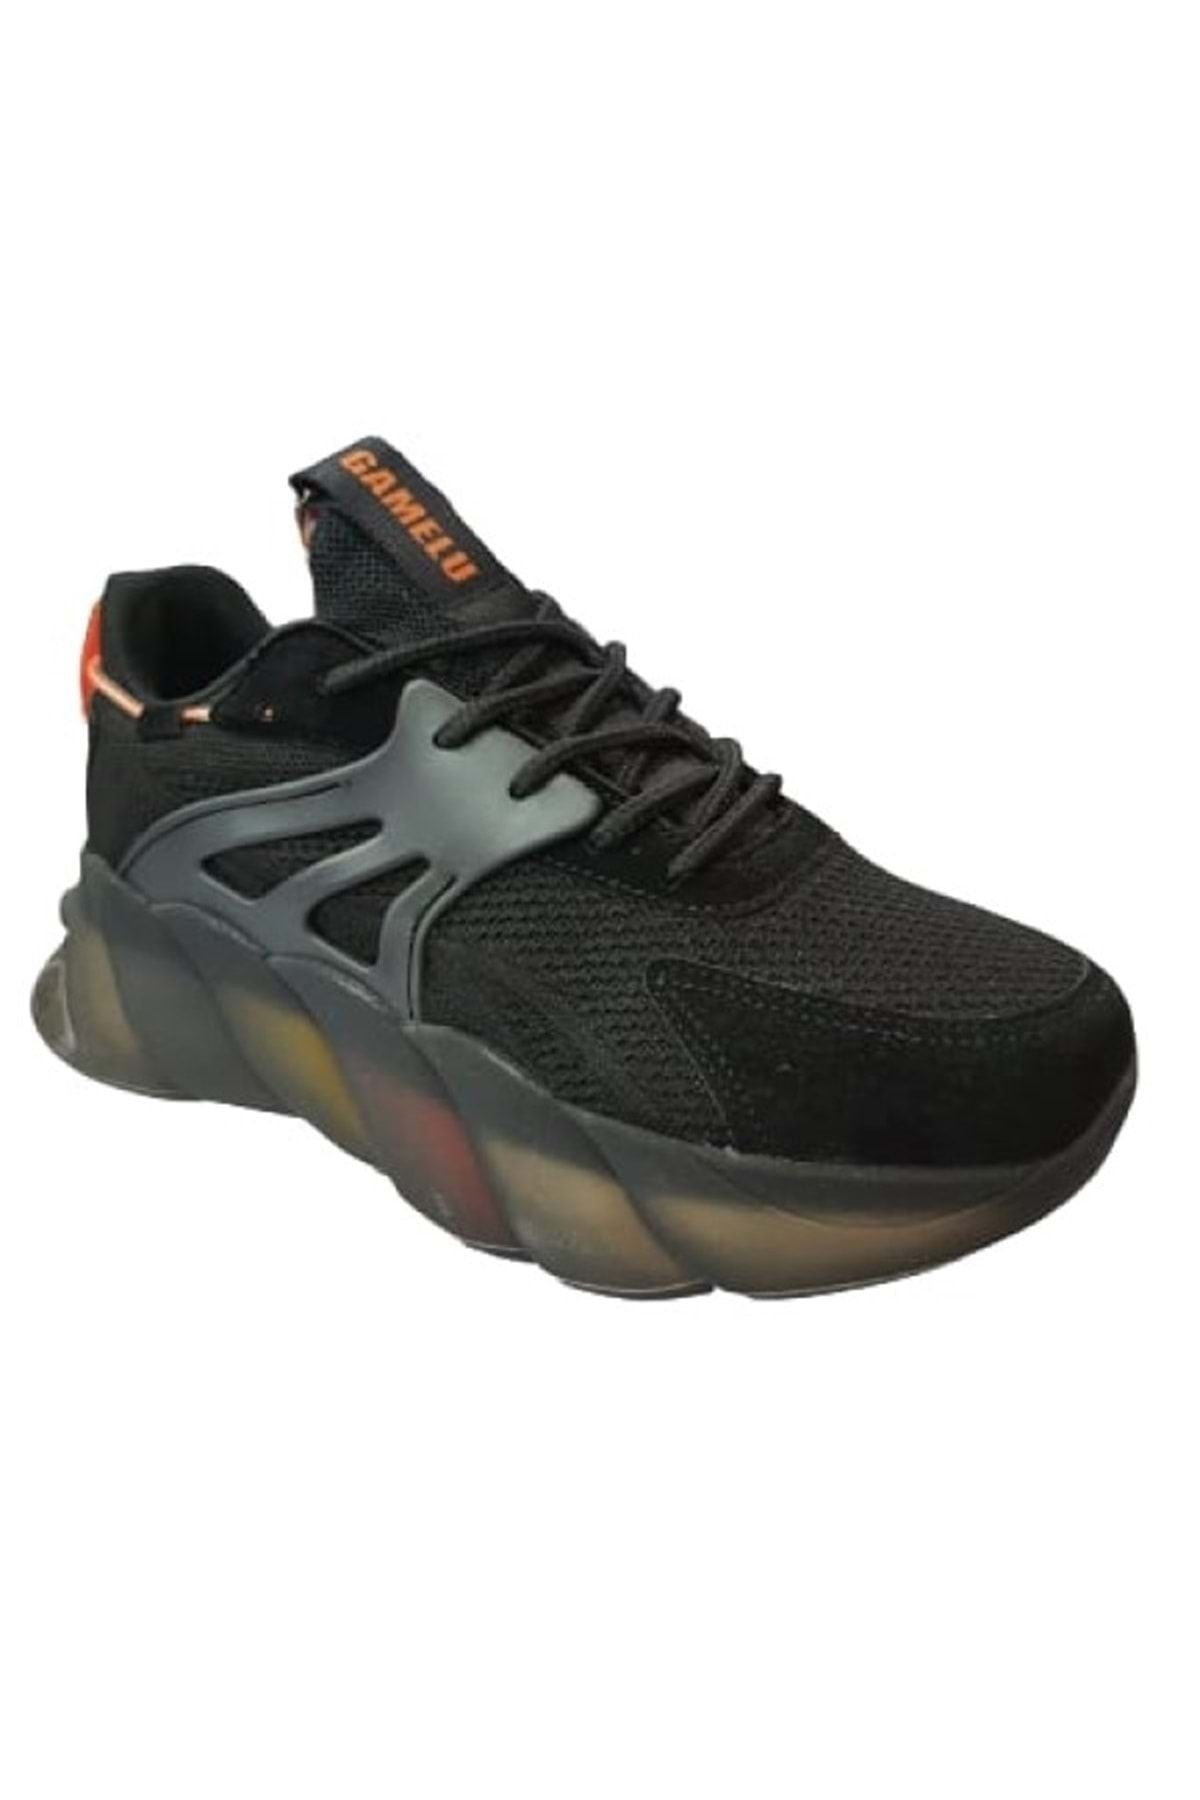 NORTH OF WILD Gamelu 23yz Care Kadın Sneakers Keten Günlük Spor Ayakkabı - Siyah - St00206-siyah-39